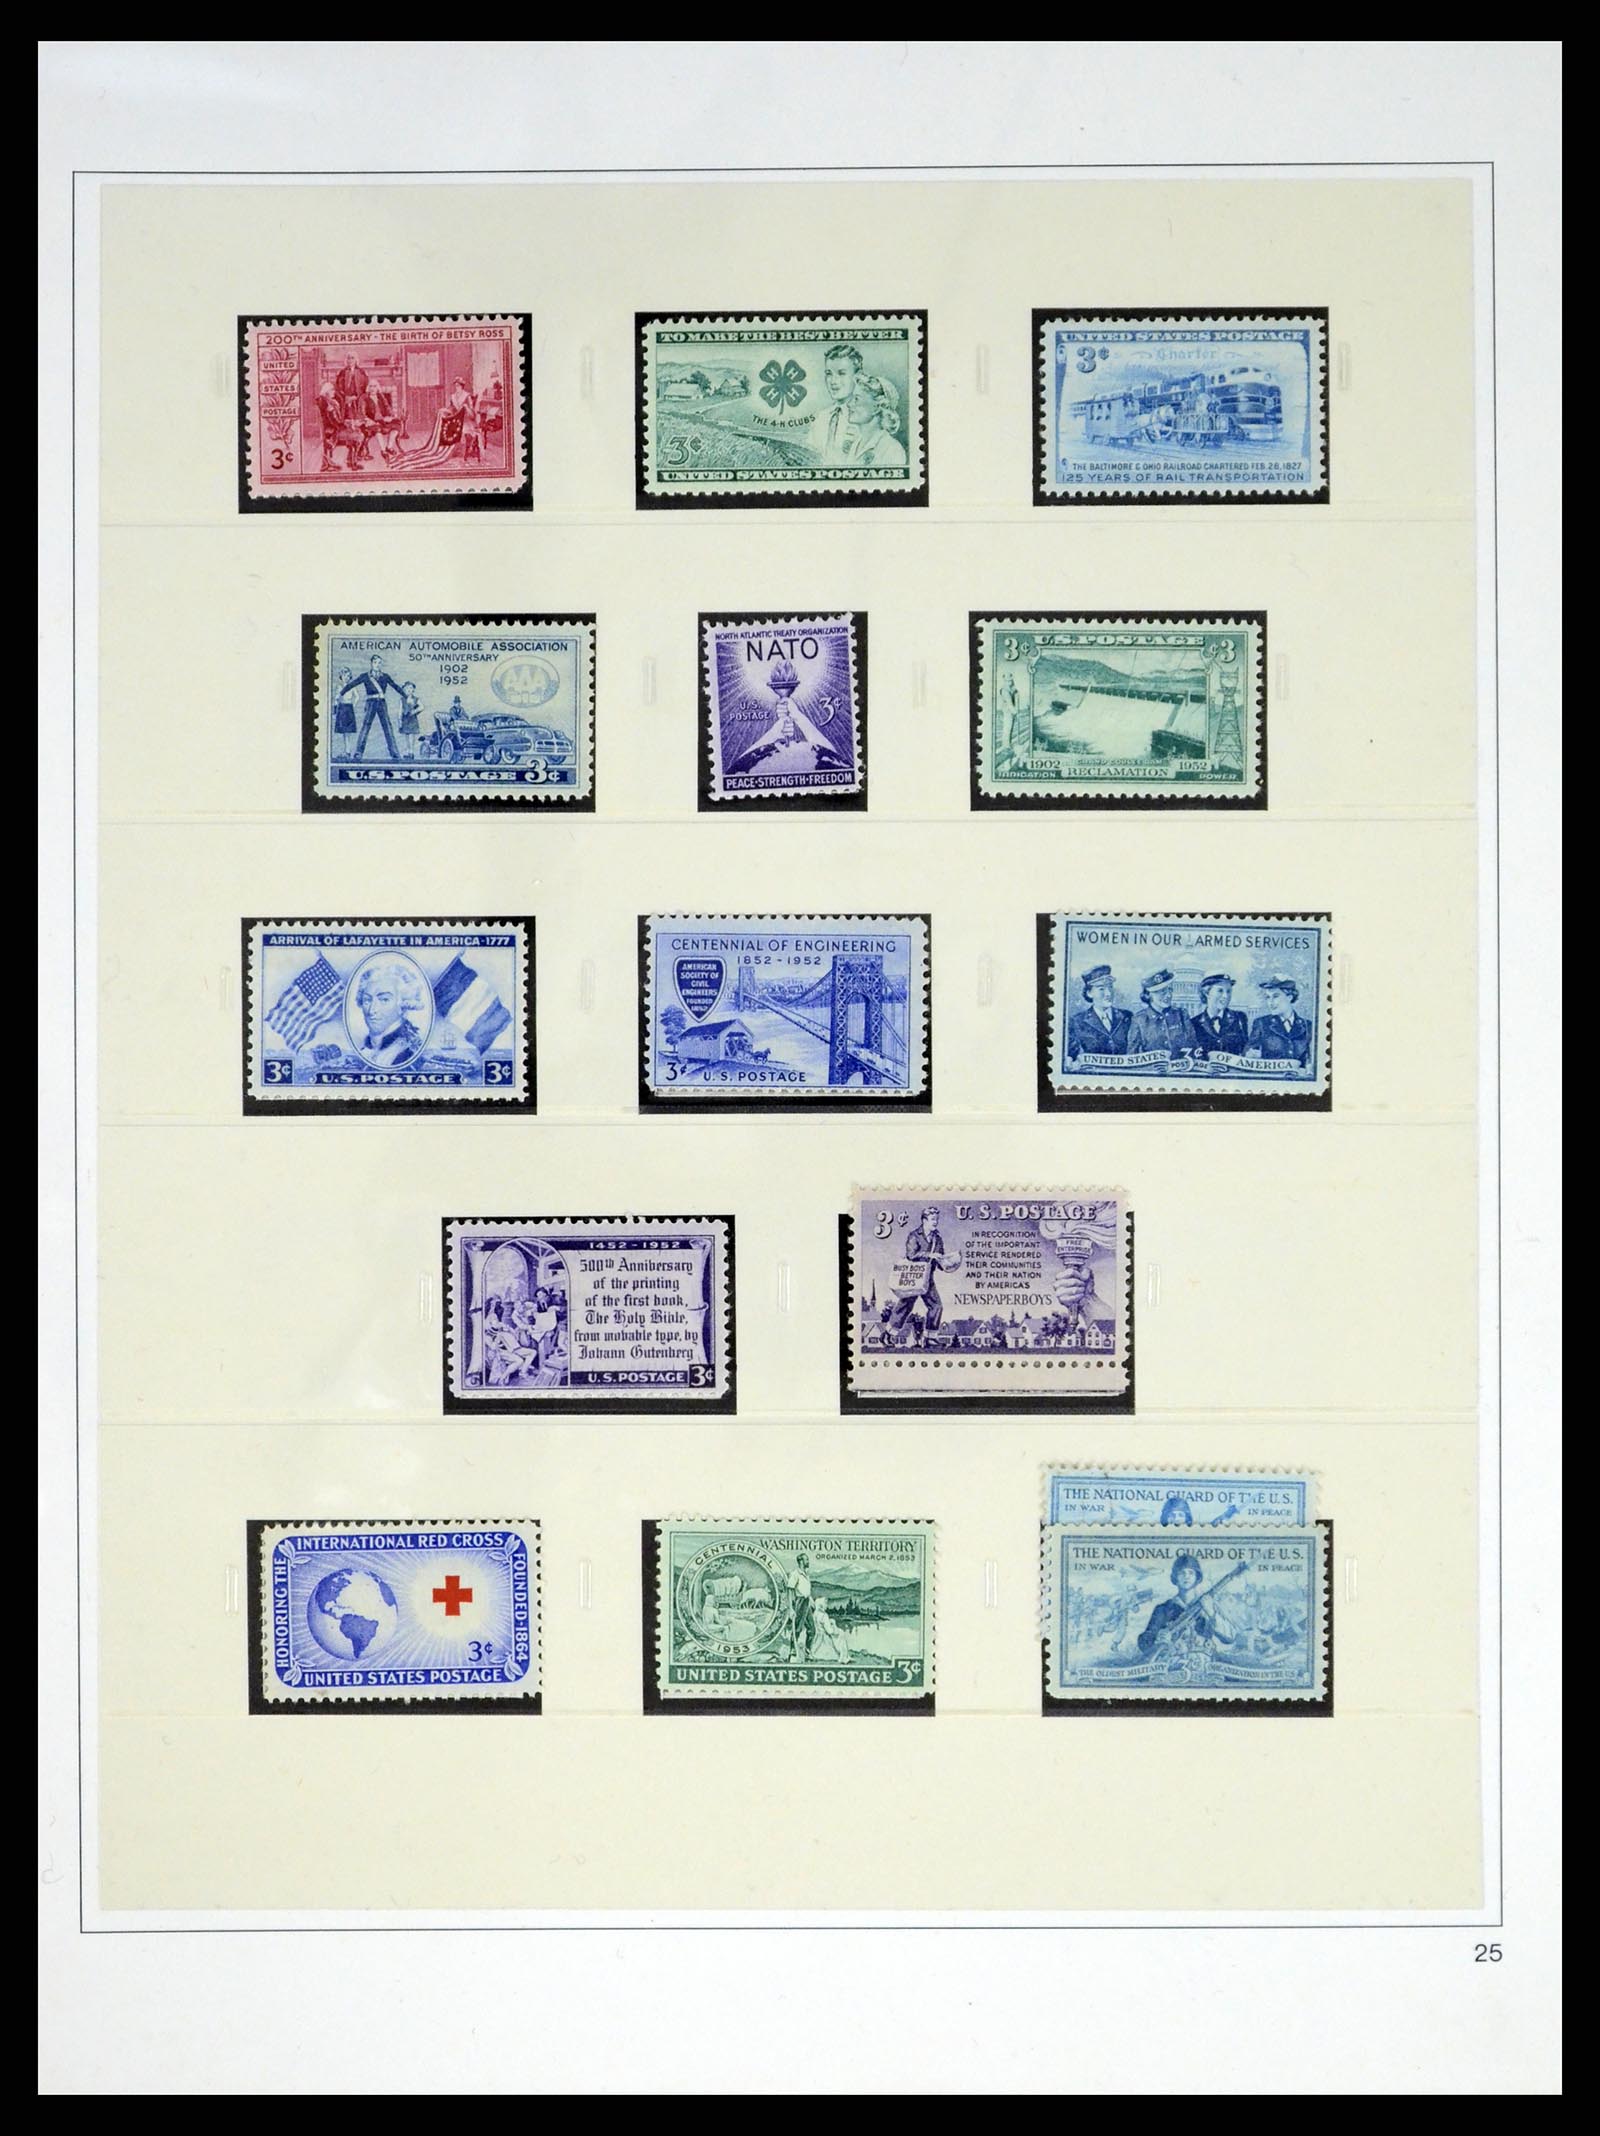 37551 062 - Stamp collection 37551 USA 1851-2001.